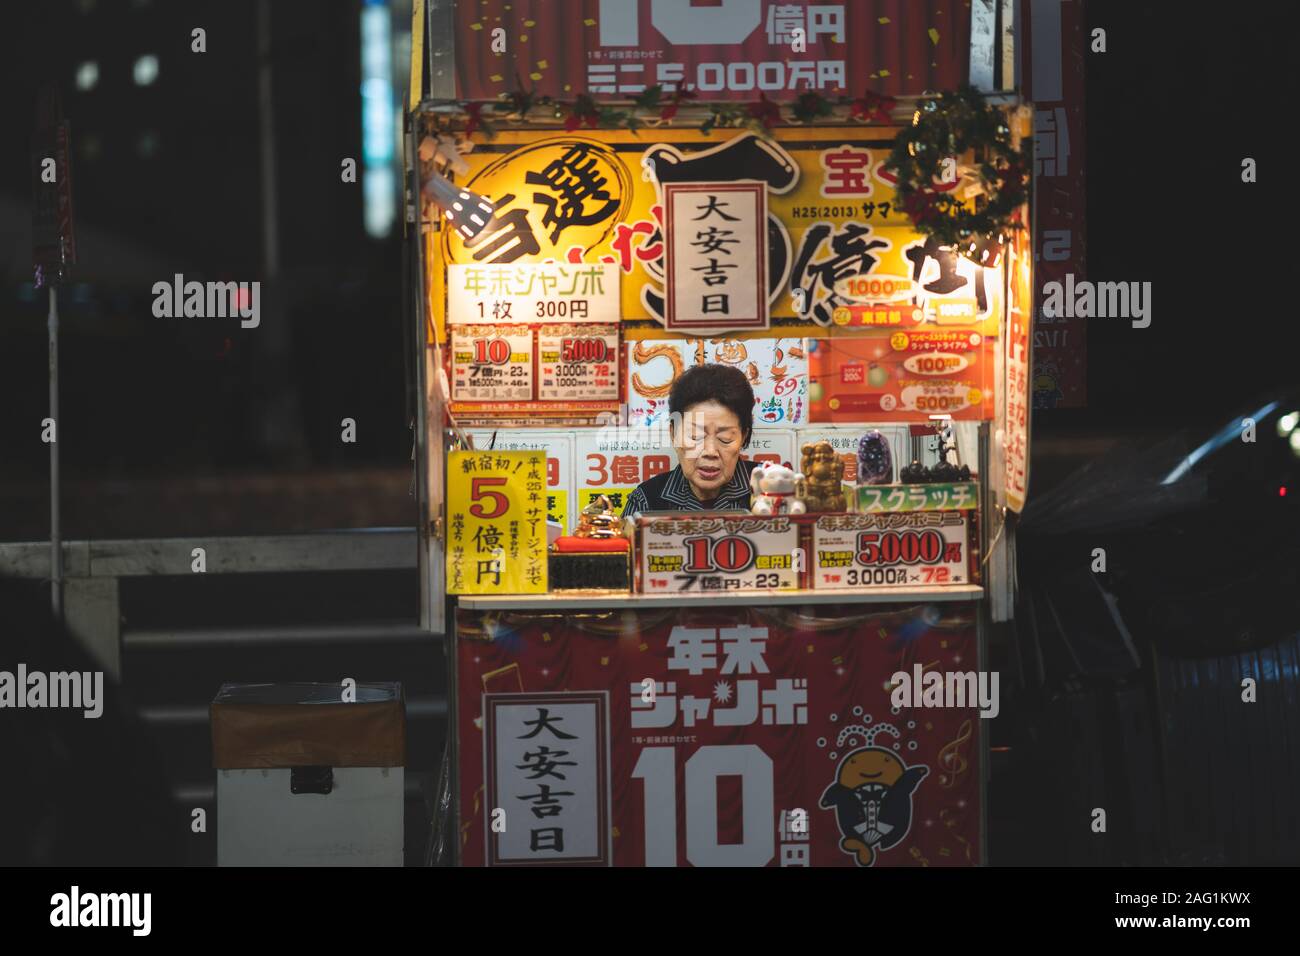 smallest kiosk in Shinjuku Tokyo Japan Stock Photo